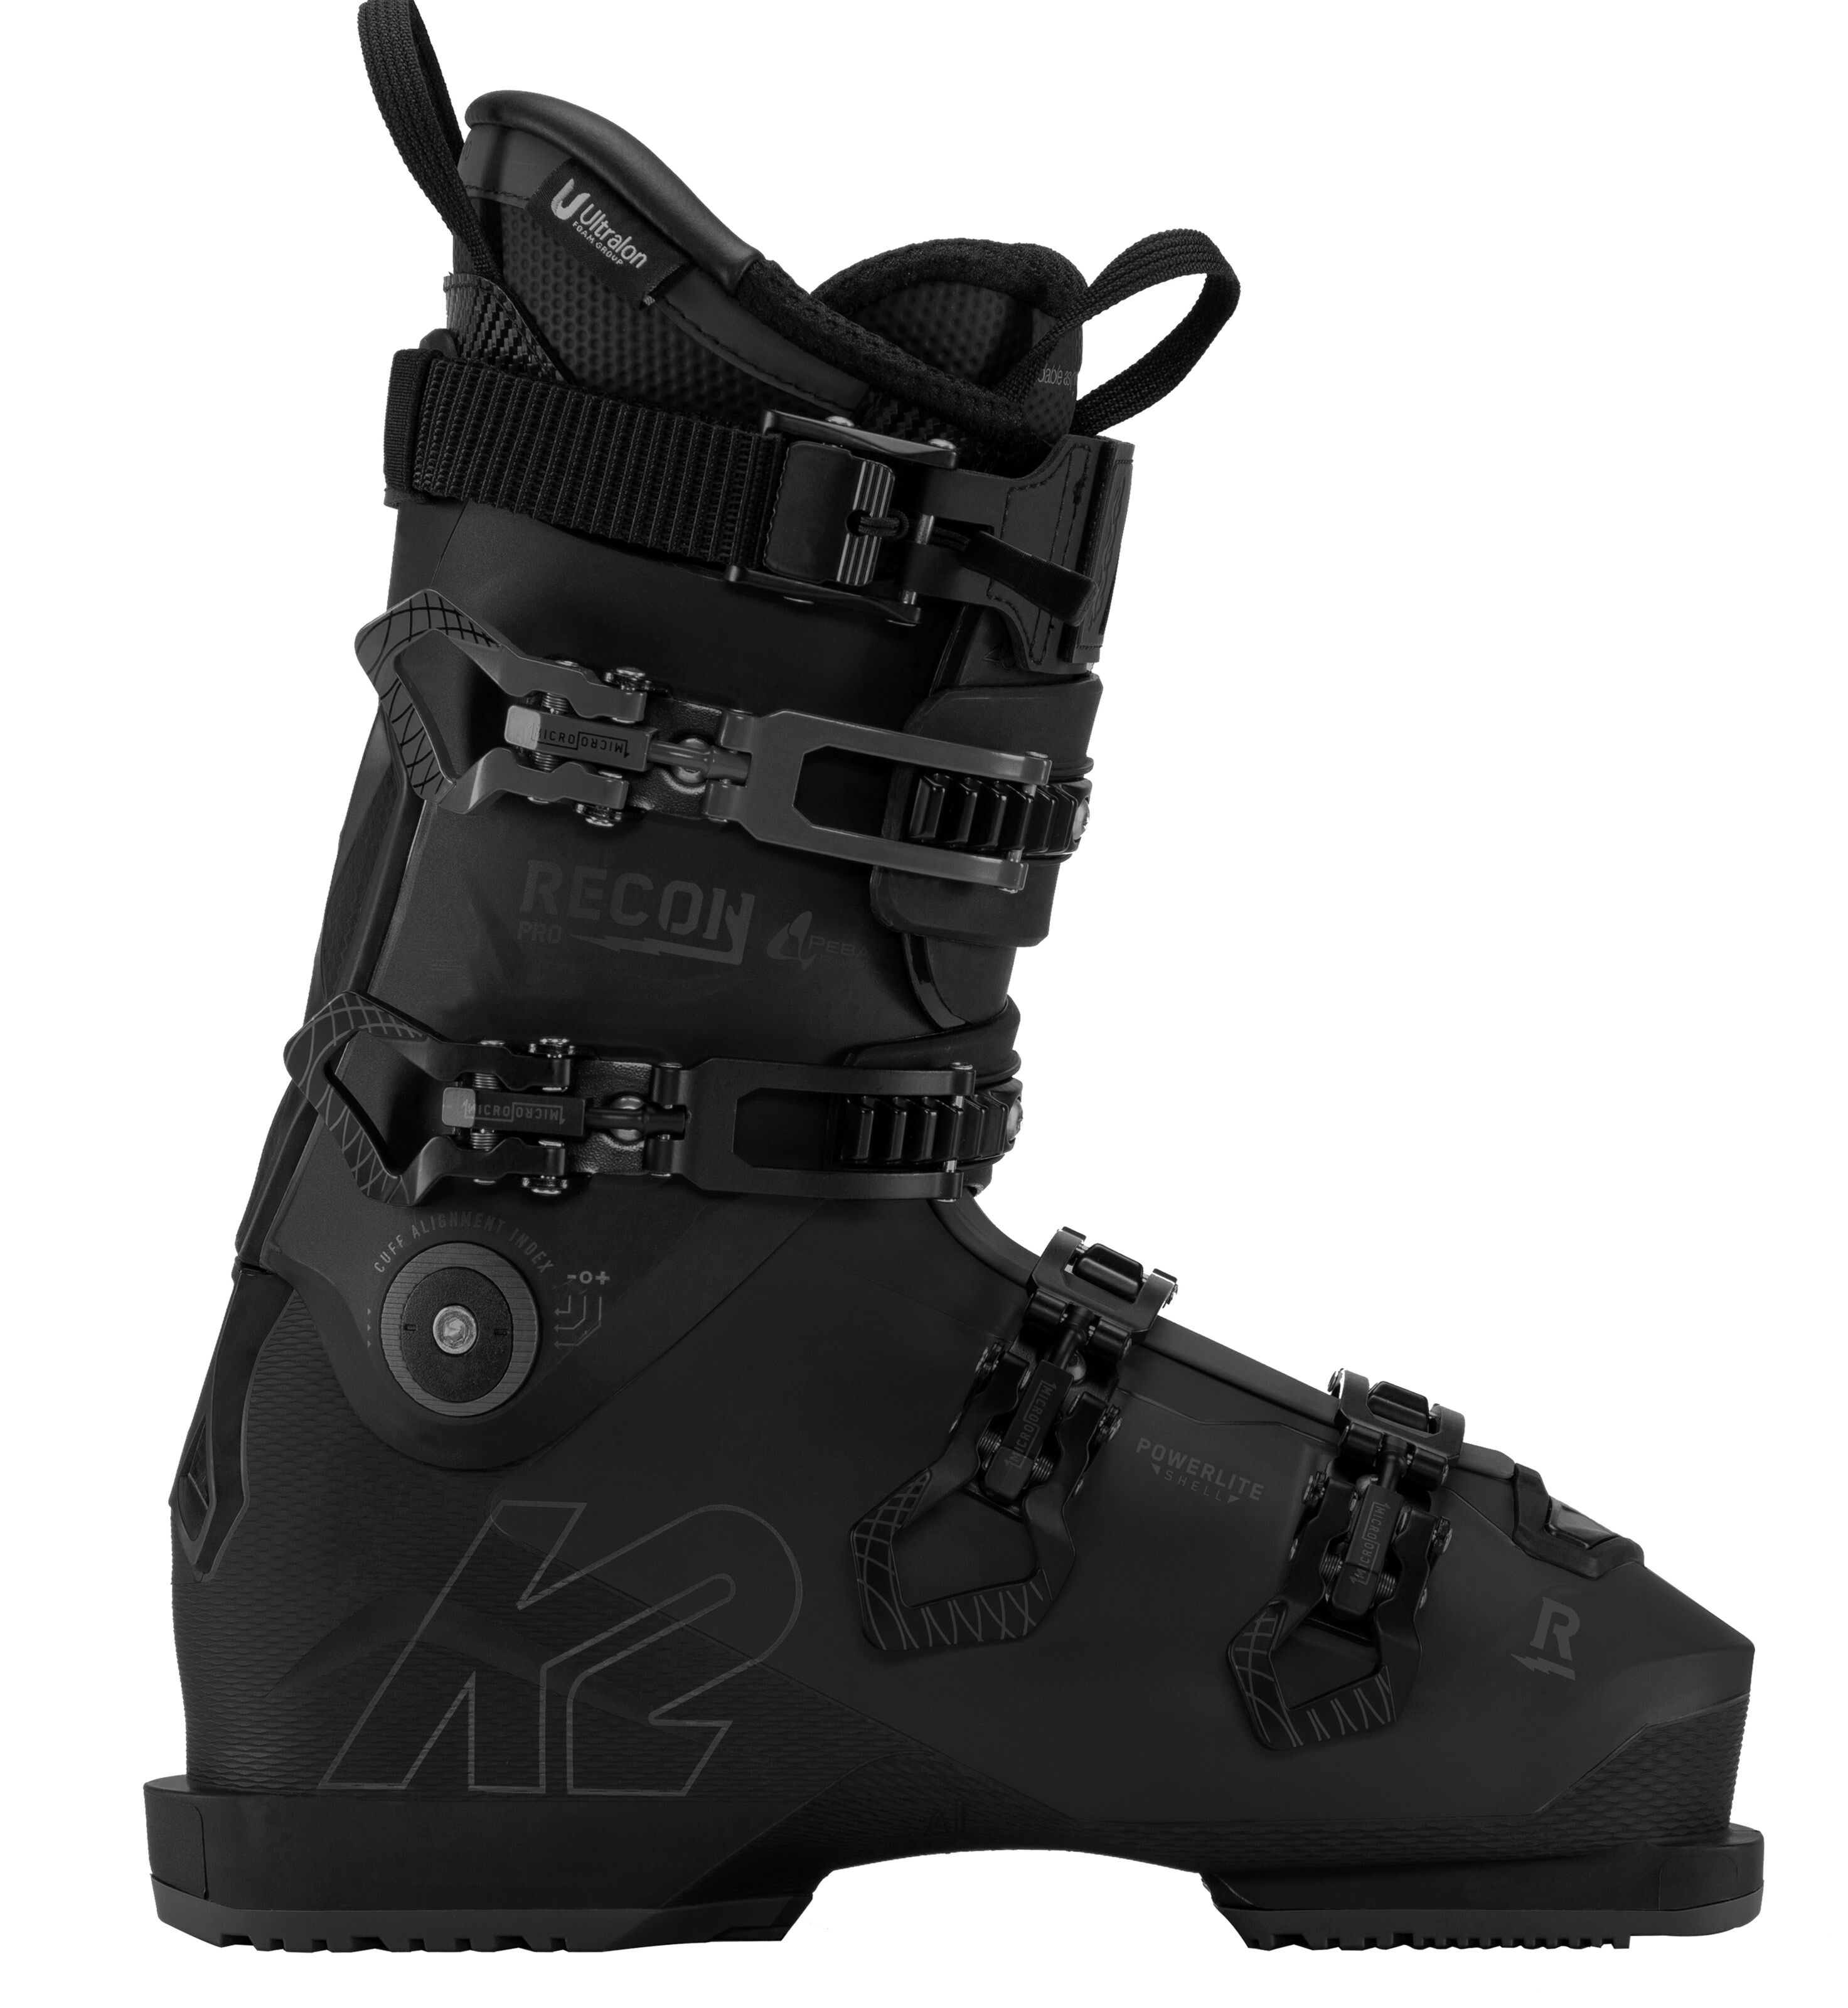 K2 Recon Pro alpinstøvler, herre 21/22  28,5 2021